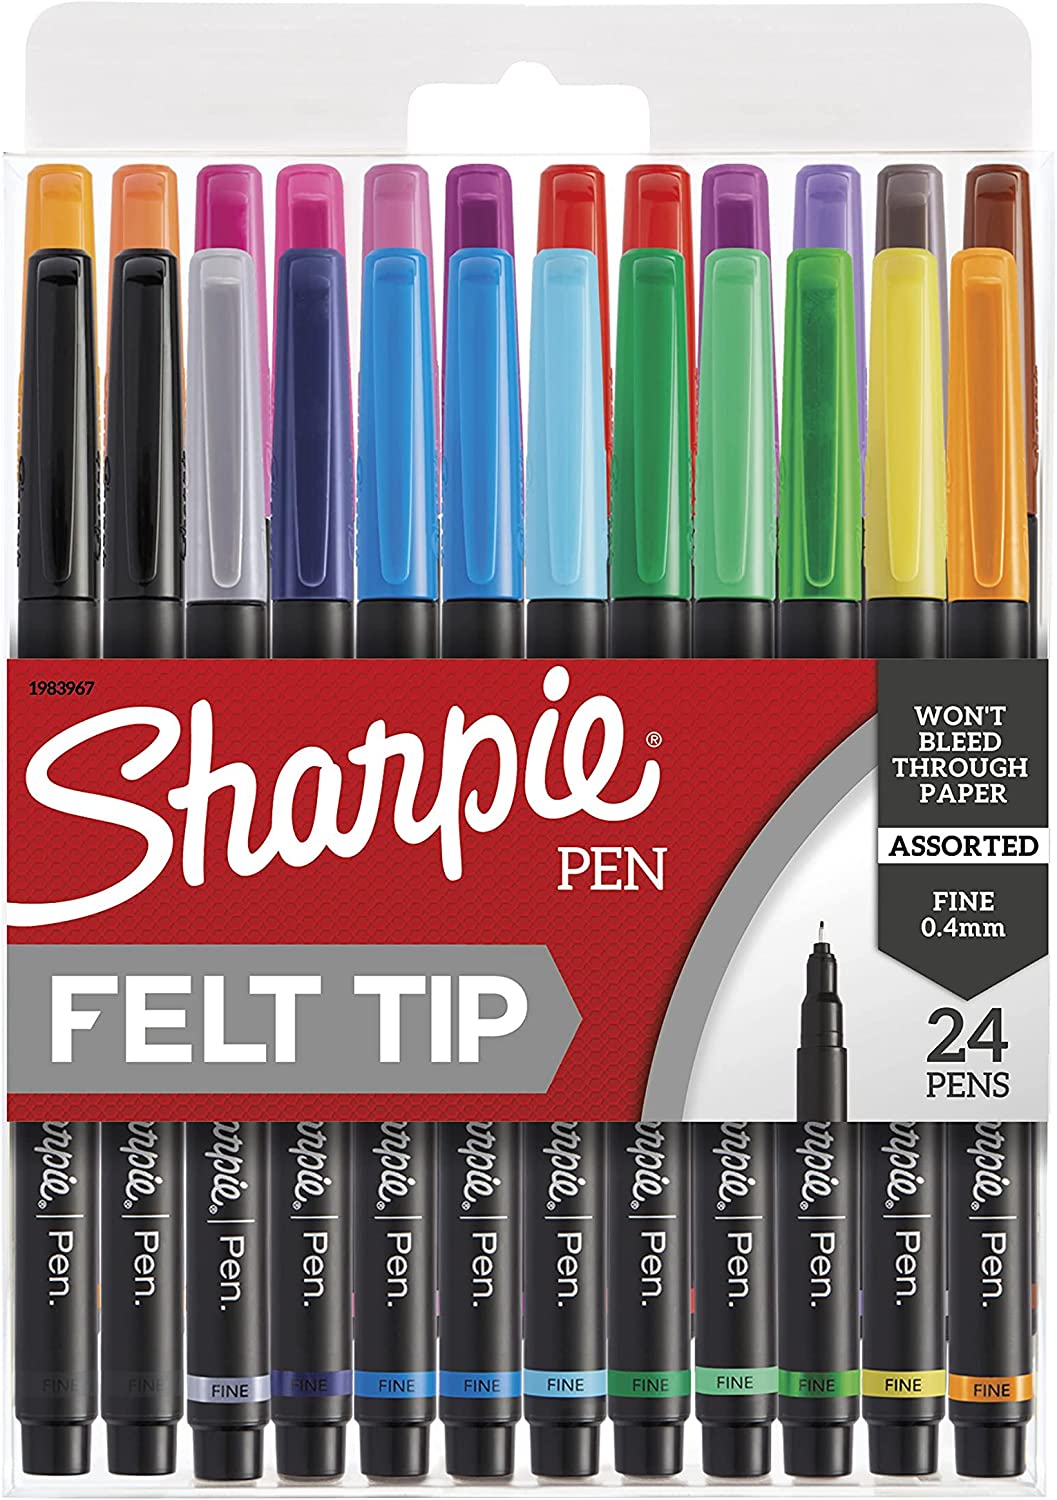 Sharpie Pen Felt Tip 24 Pens